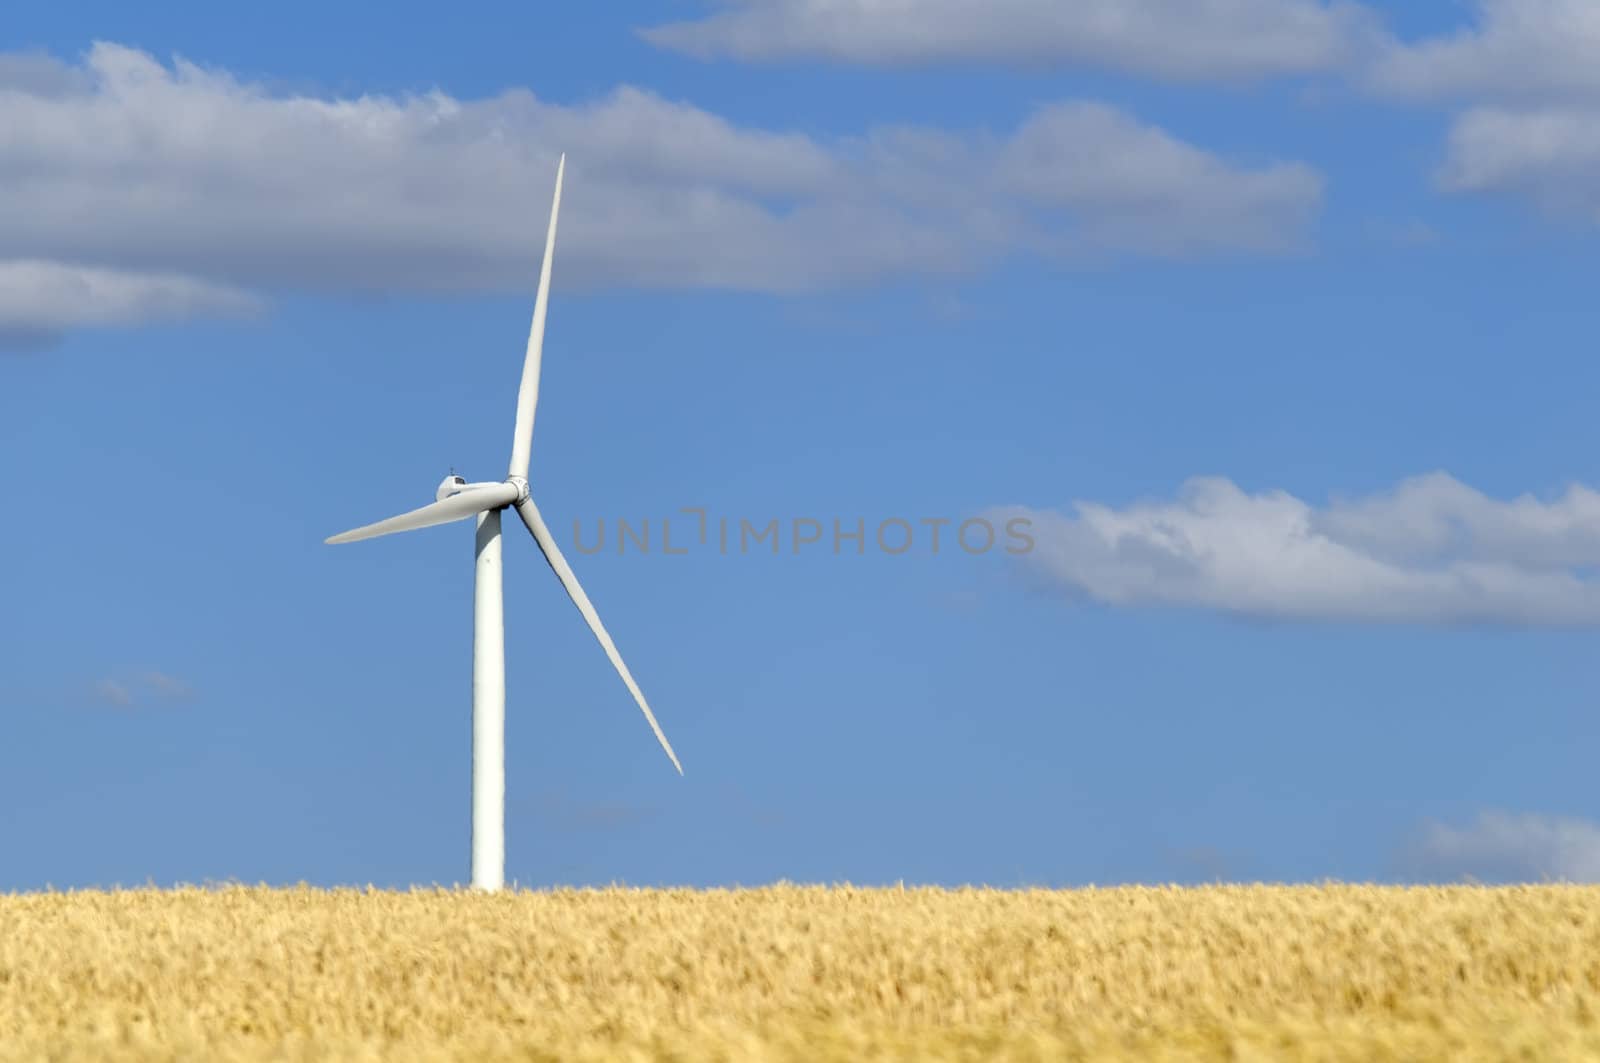 a wind turbine in a cultivated field